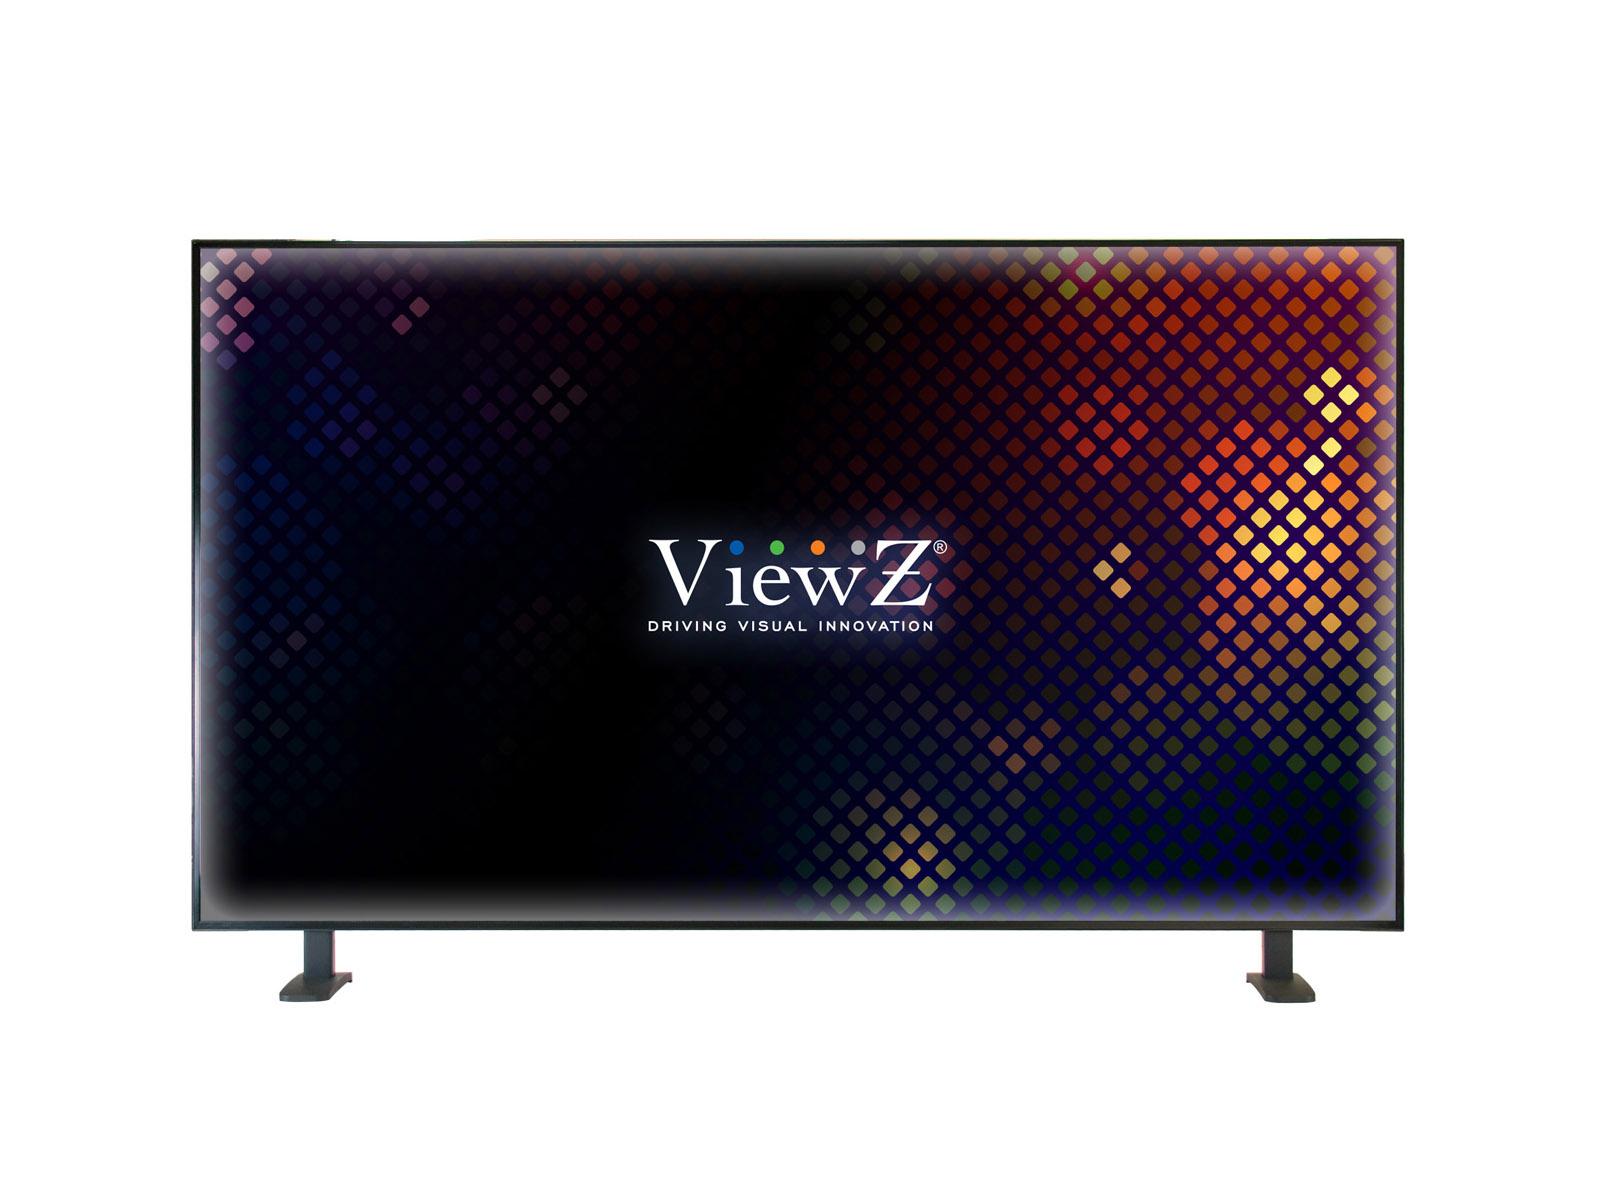 ViewZ VZ-65UHD 65 inch 3840x2160 Display Port/HDMI 4K UHD/Quad View LED Monitor